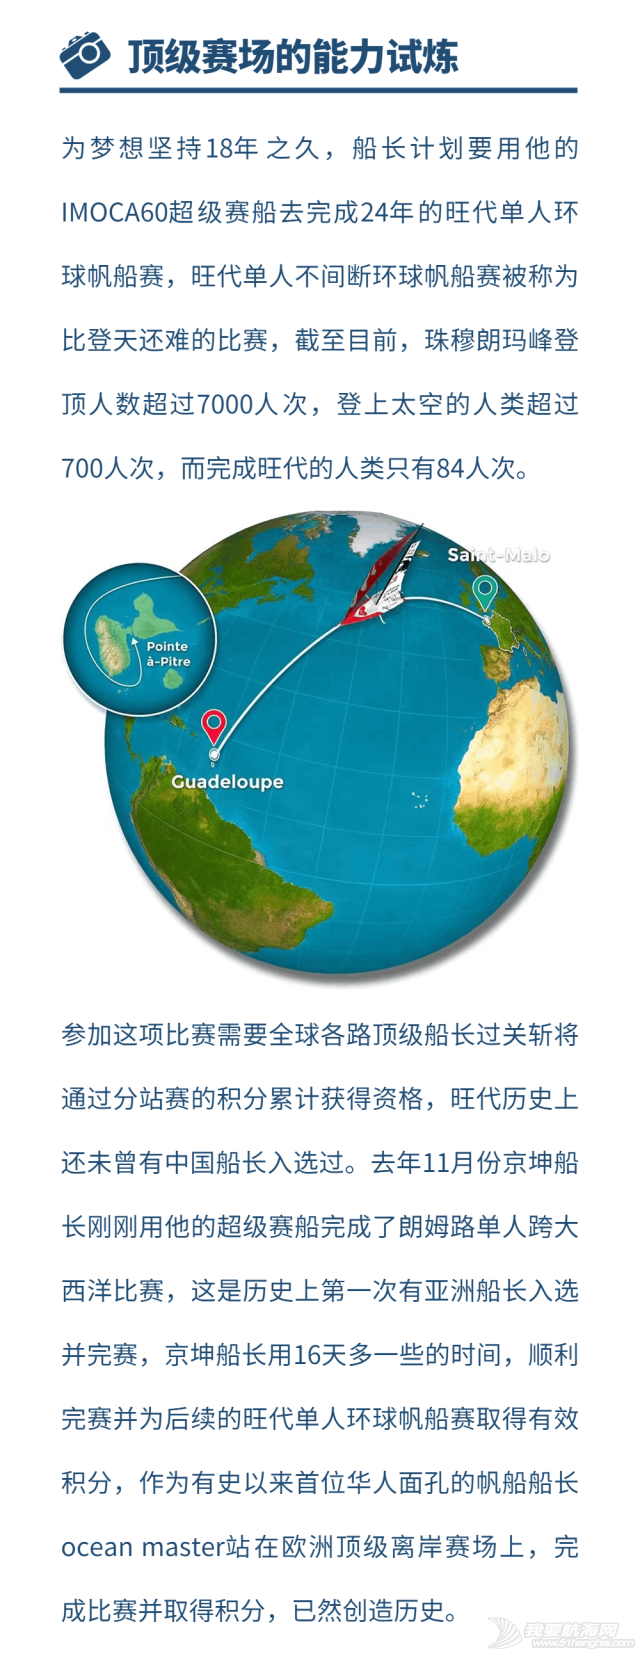 中国梦之队海南站分享会---用世界语言,讲好中国故事w6.jpg